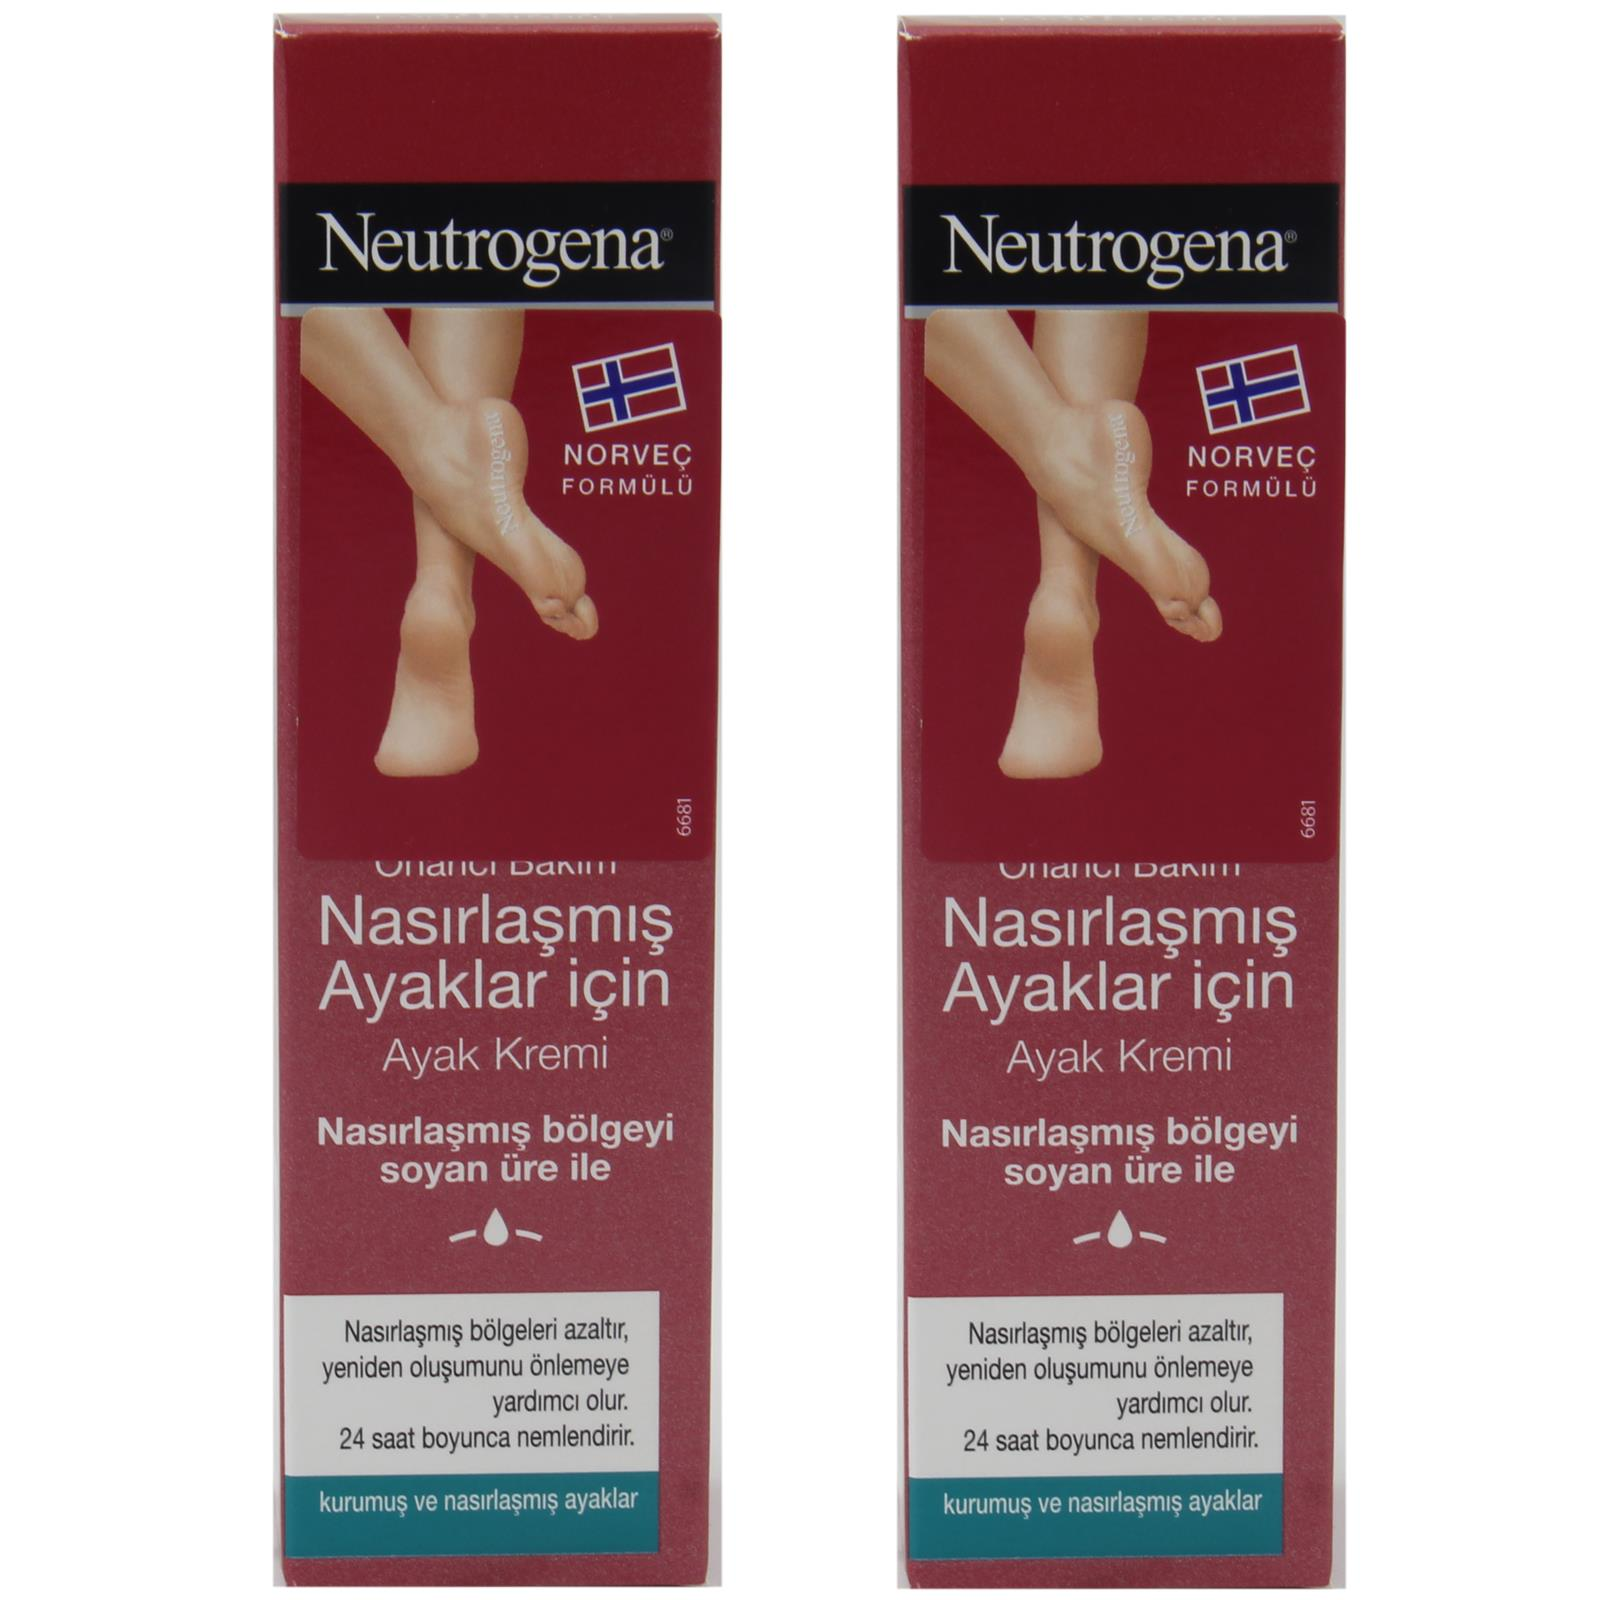 Neutrogena Nasırlaşmış Ayaklar İçin Ayak Kremi 50 ml 2 ADET